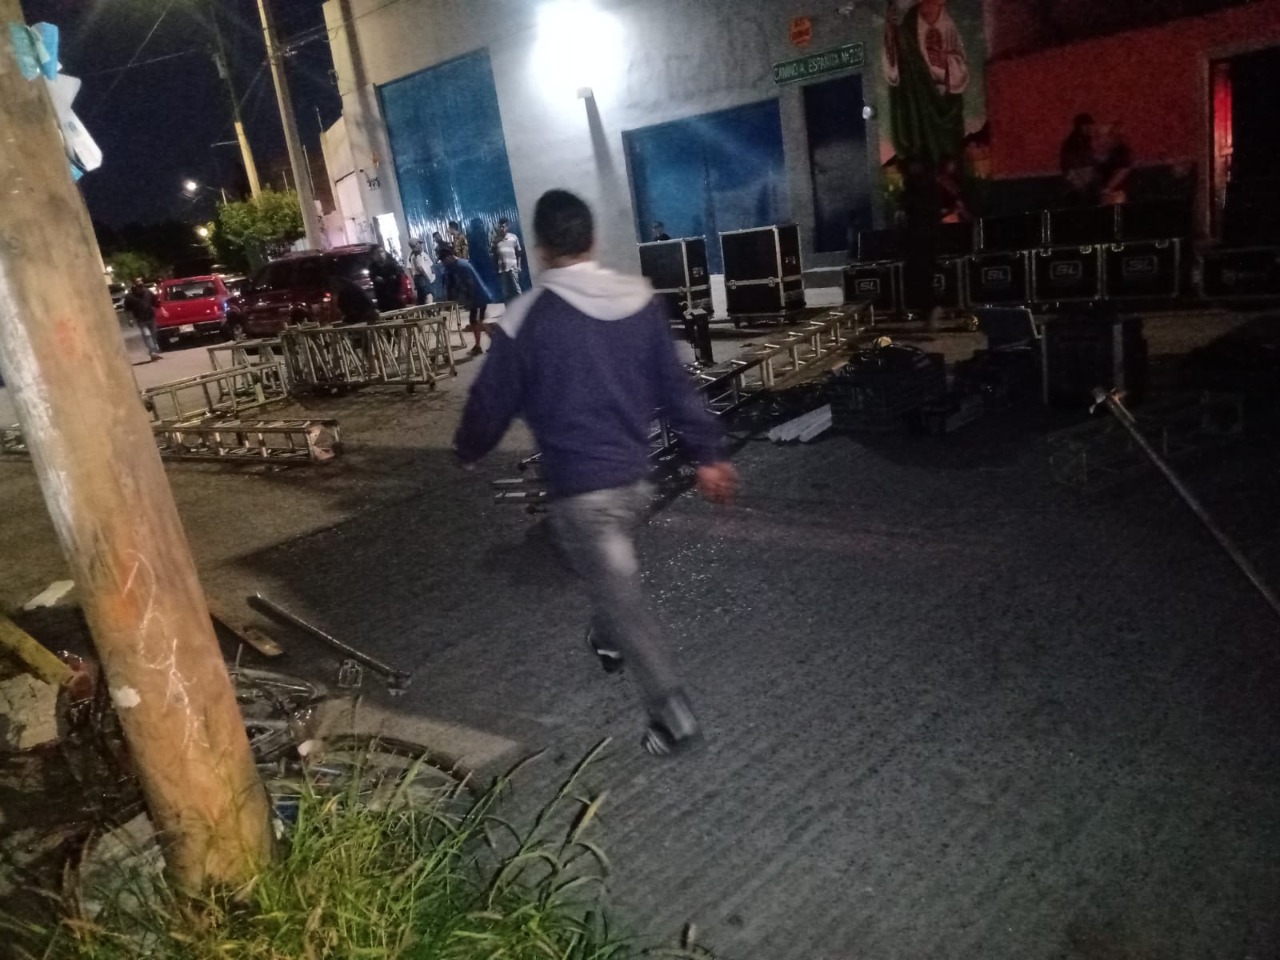 Oficiales atendieron el reporte de un baile callejero en la colonia Simón Díaz el cual fue desactivado por no contar con permisos correspondientes